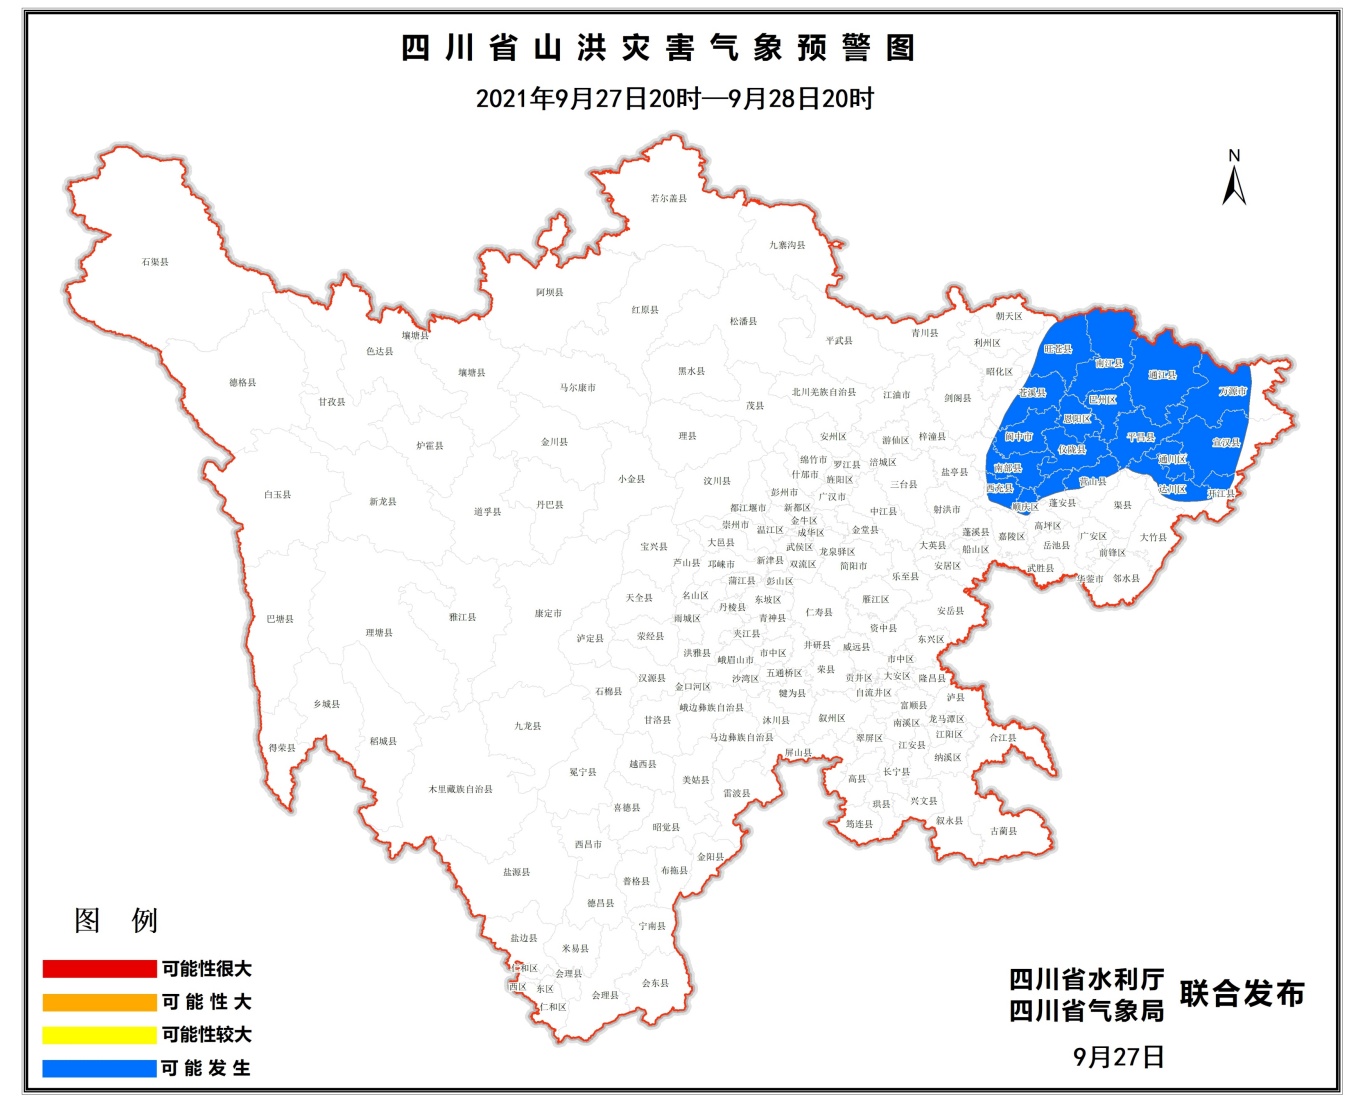 四川连续四天发布山洪灾害蓝色预警 范围扩大至达川、阆中等19个县(市、区)